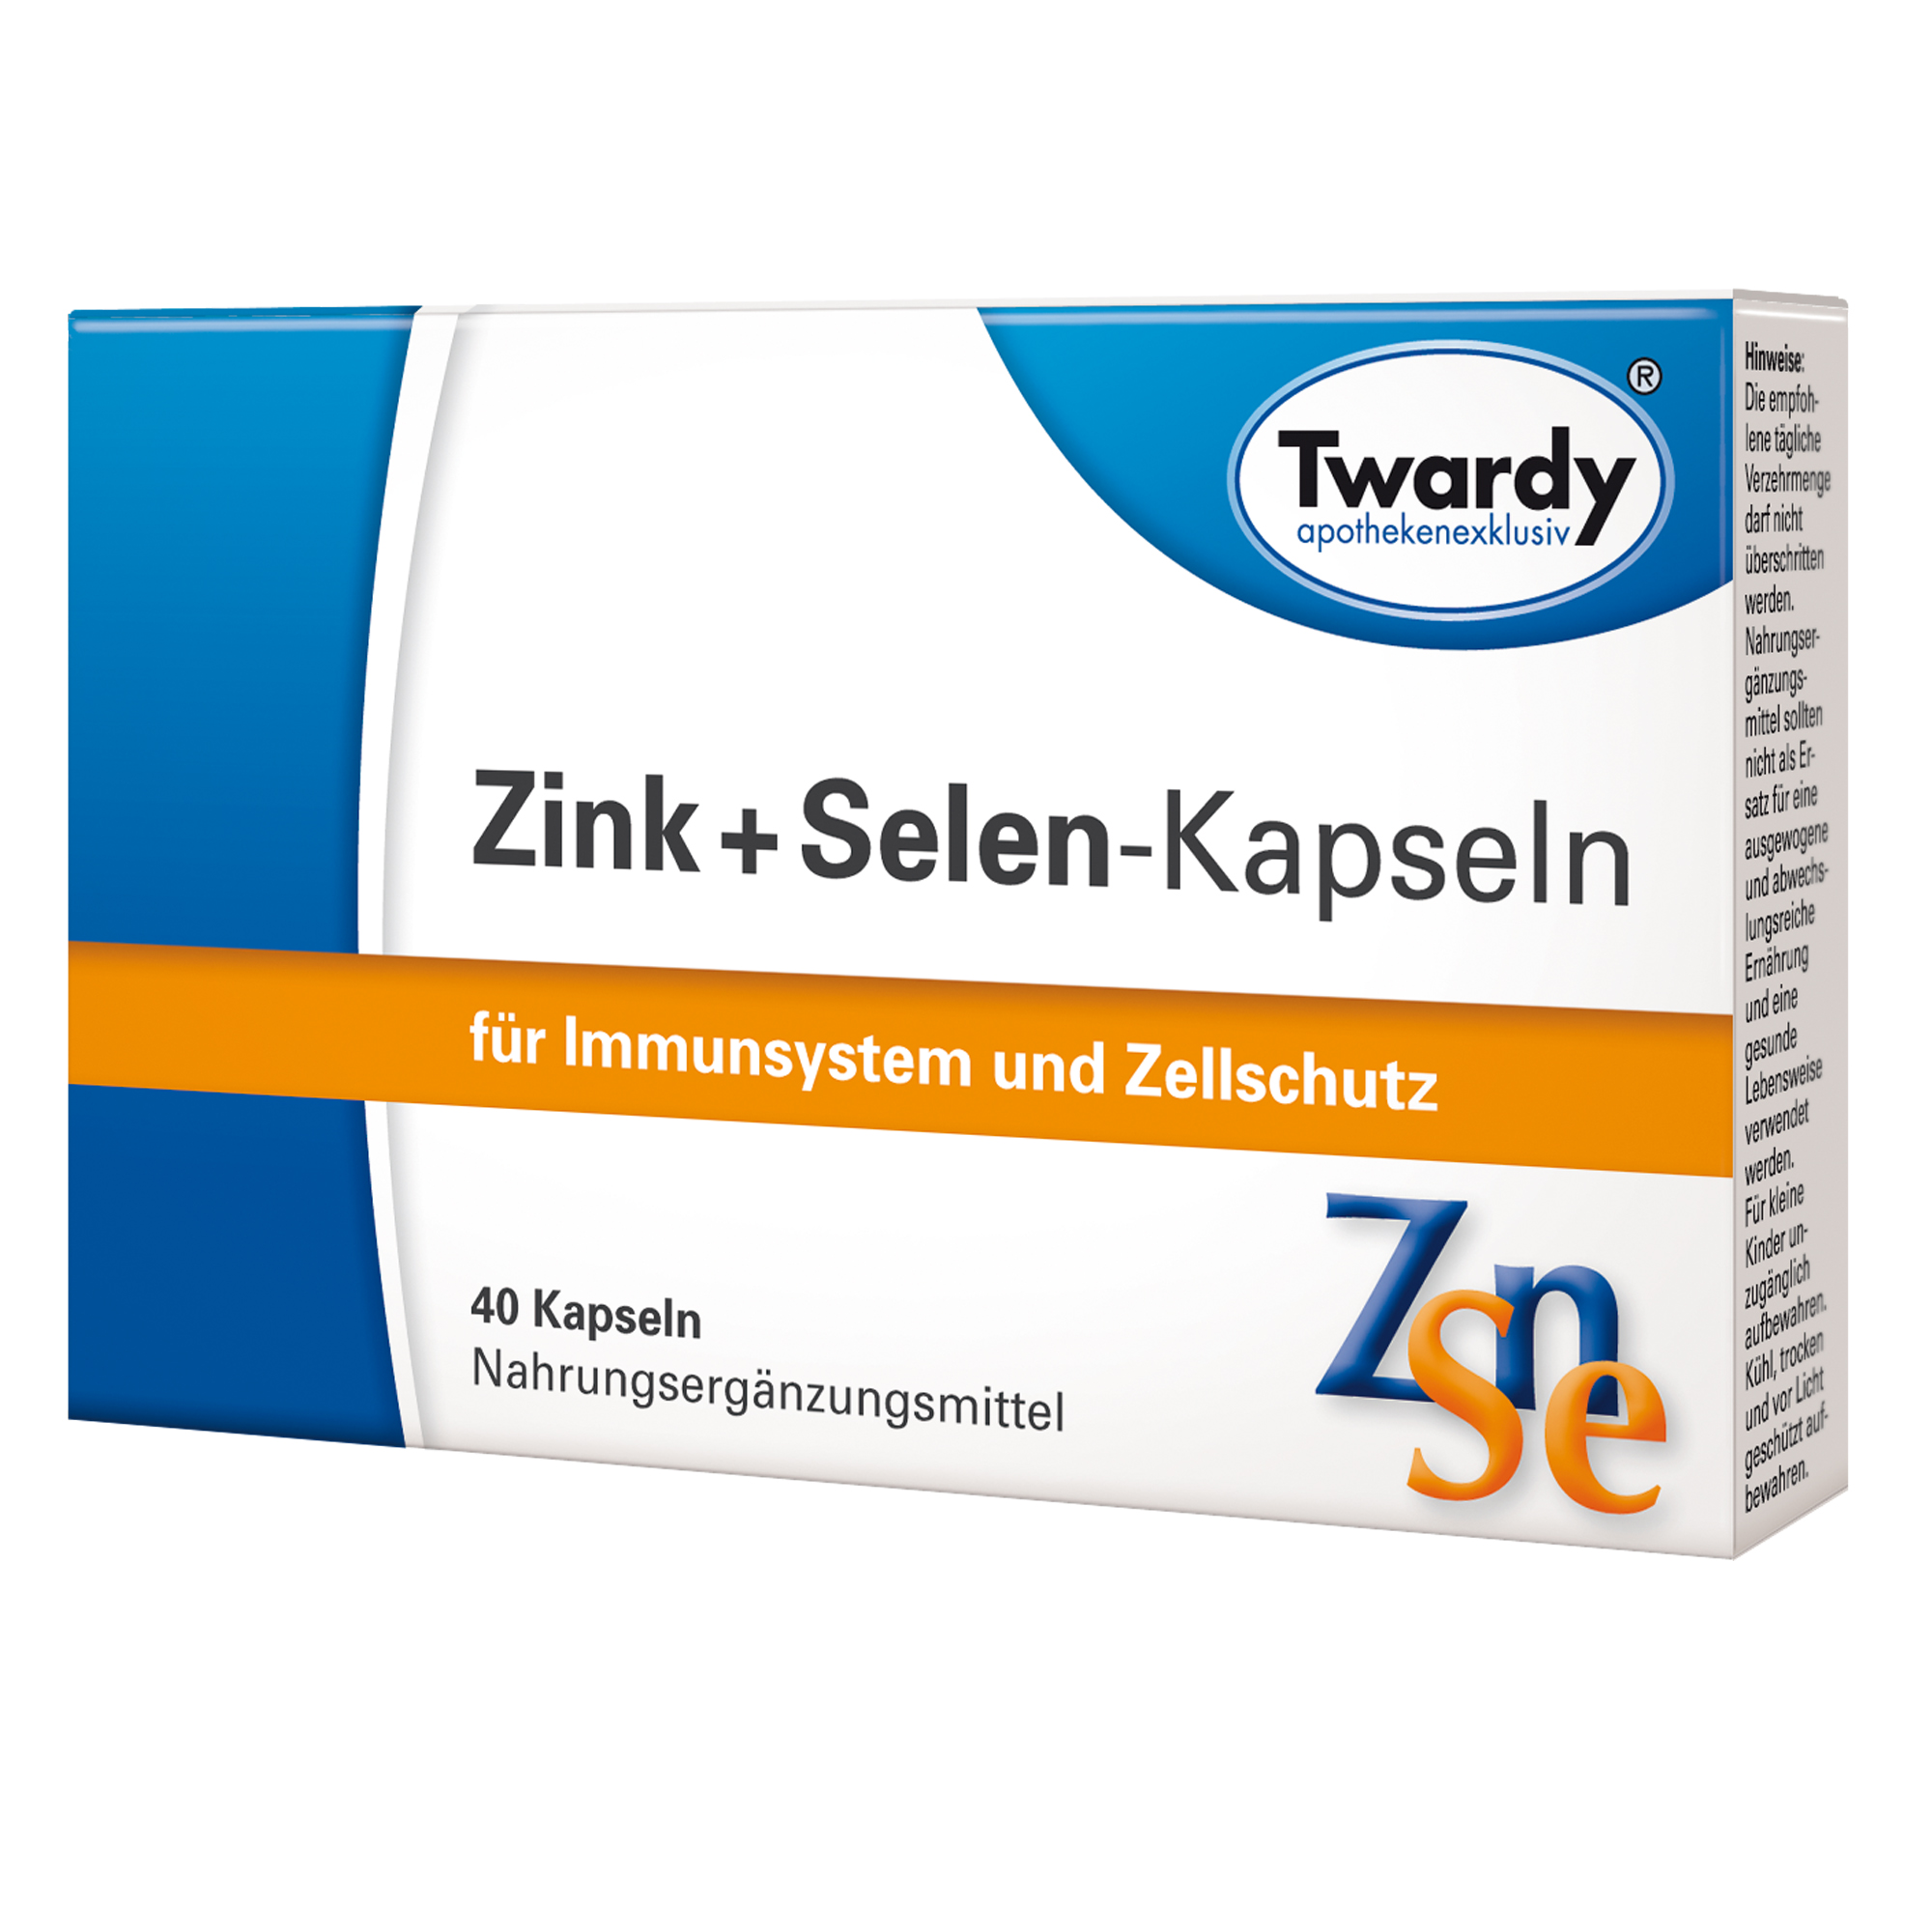 Zink + Selen-Kapseln – PZN 07709629